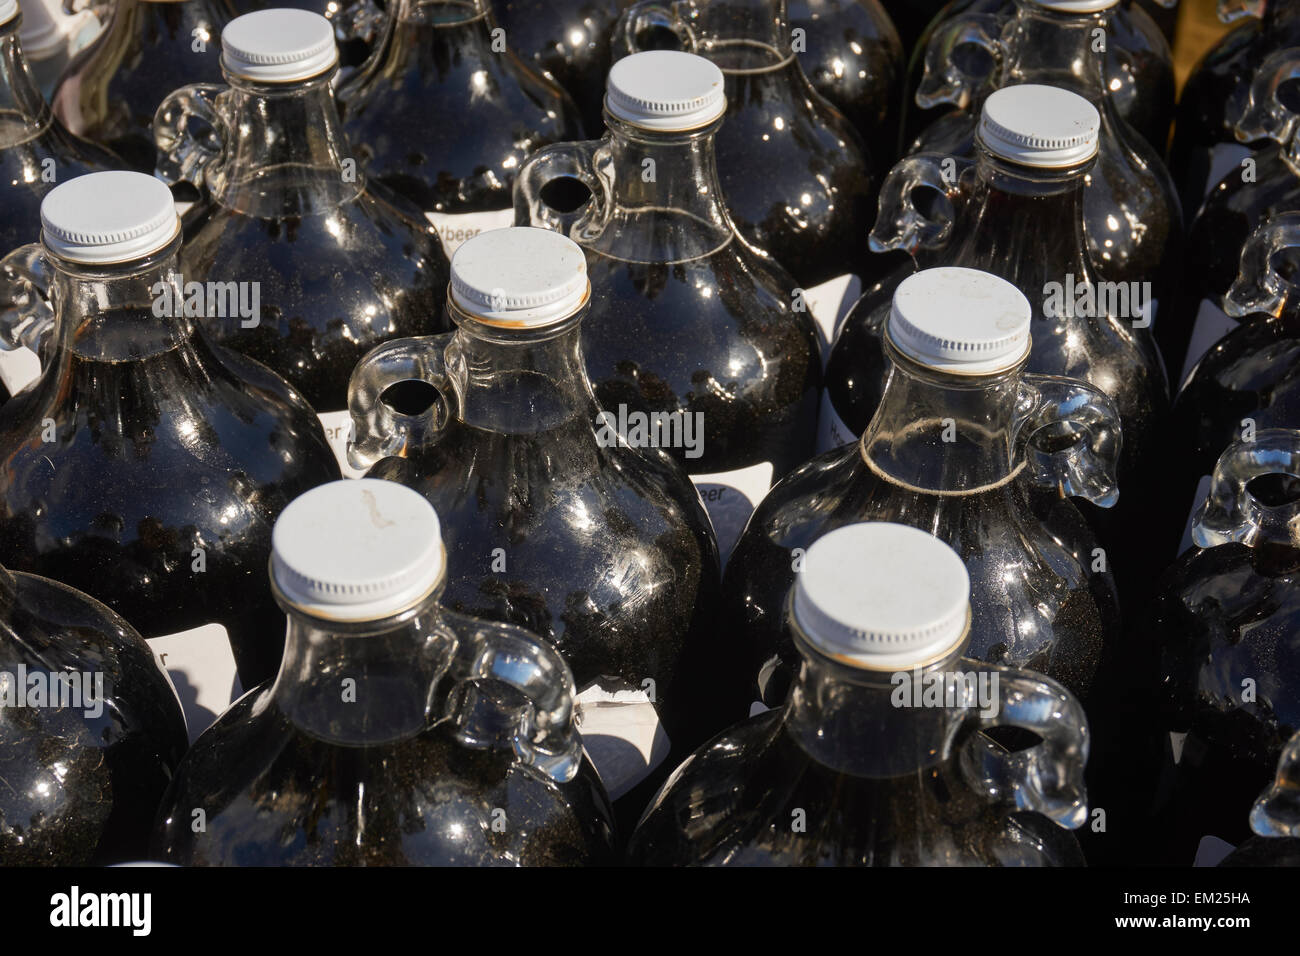 Flaschen von Amish gefertigte Handwerker Malzbier auf einem freien Markt (manchmal genannt ein "Schlamm Sale'), Wakefield, PA, USA Stockfoto